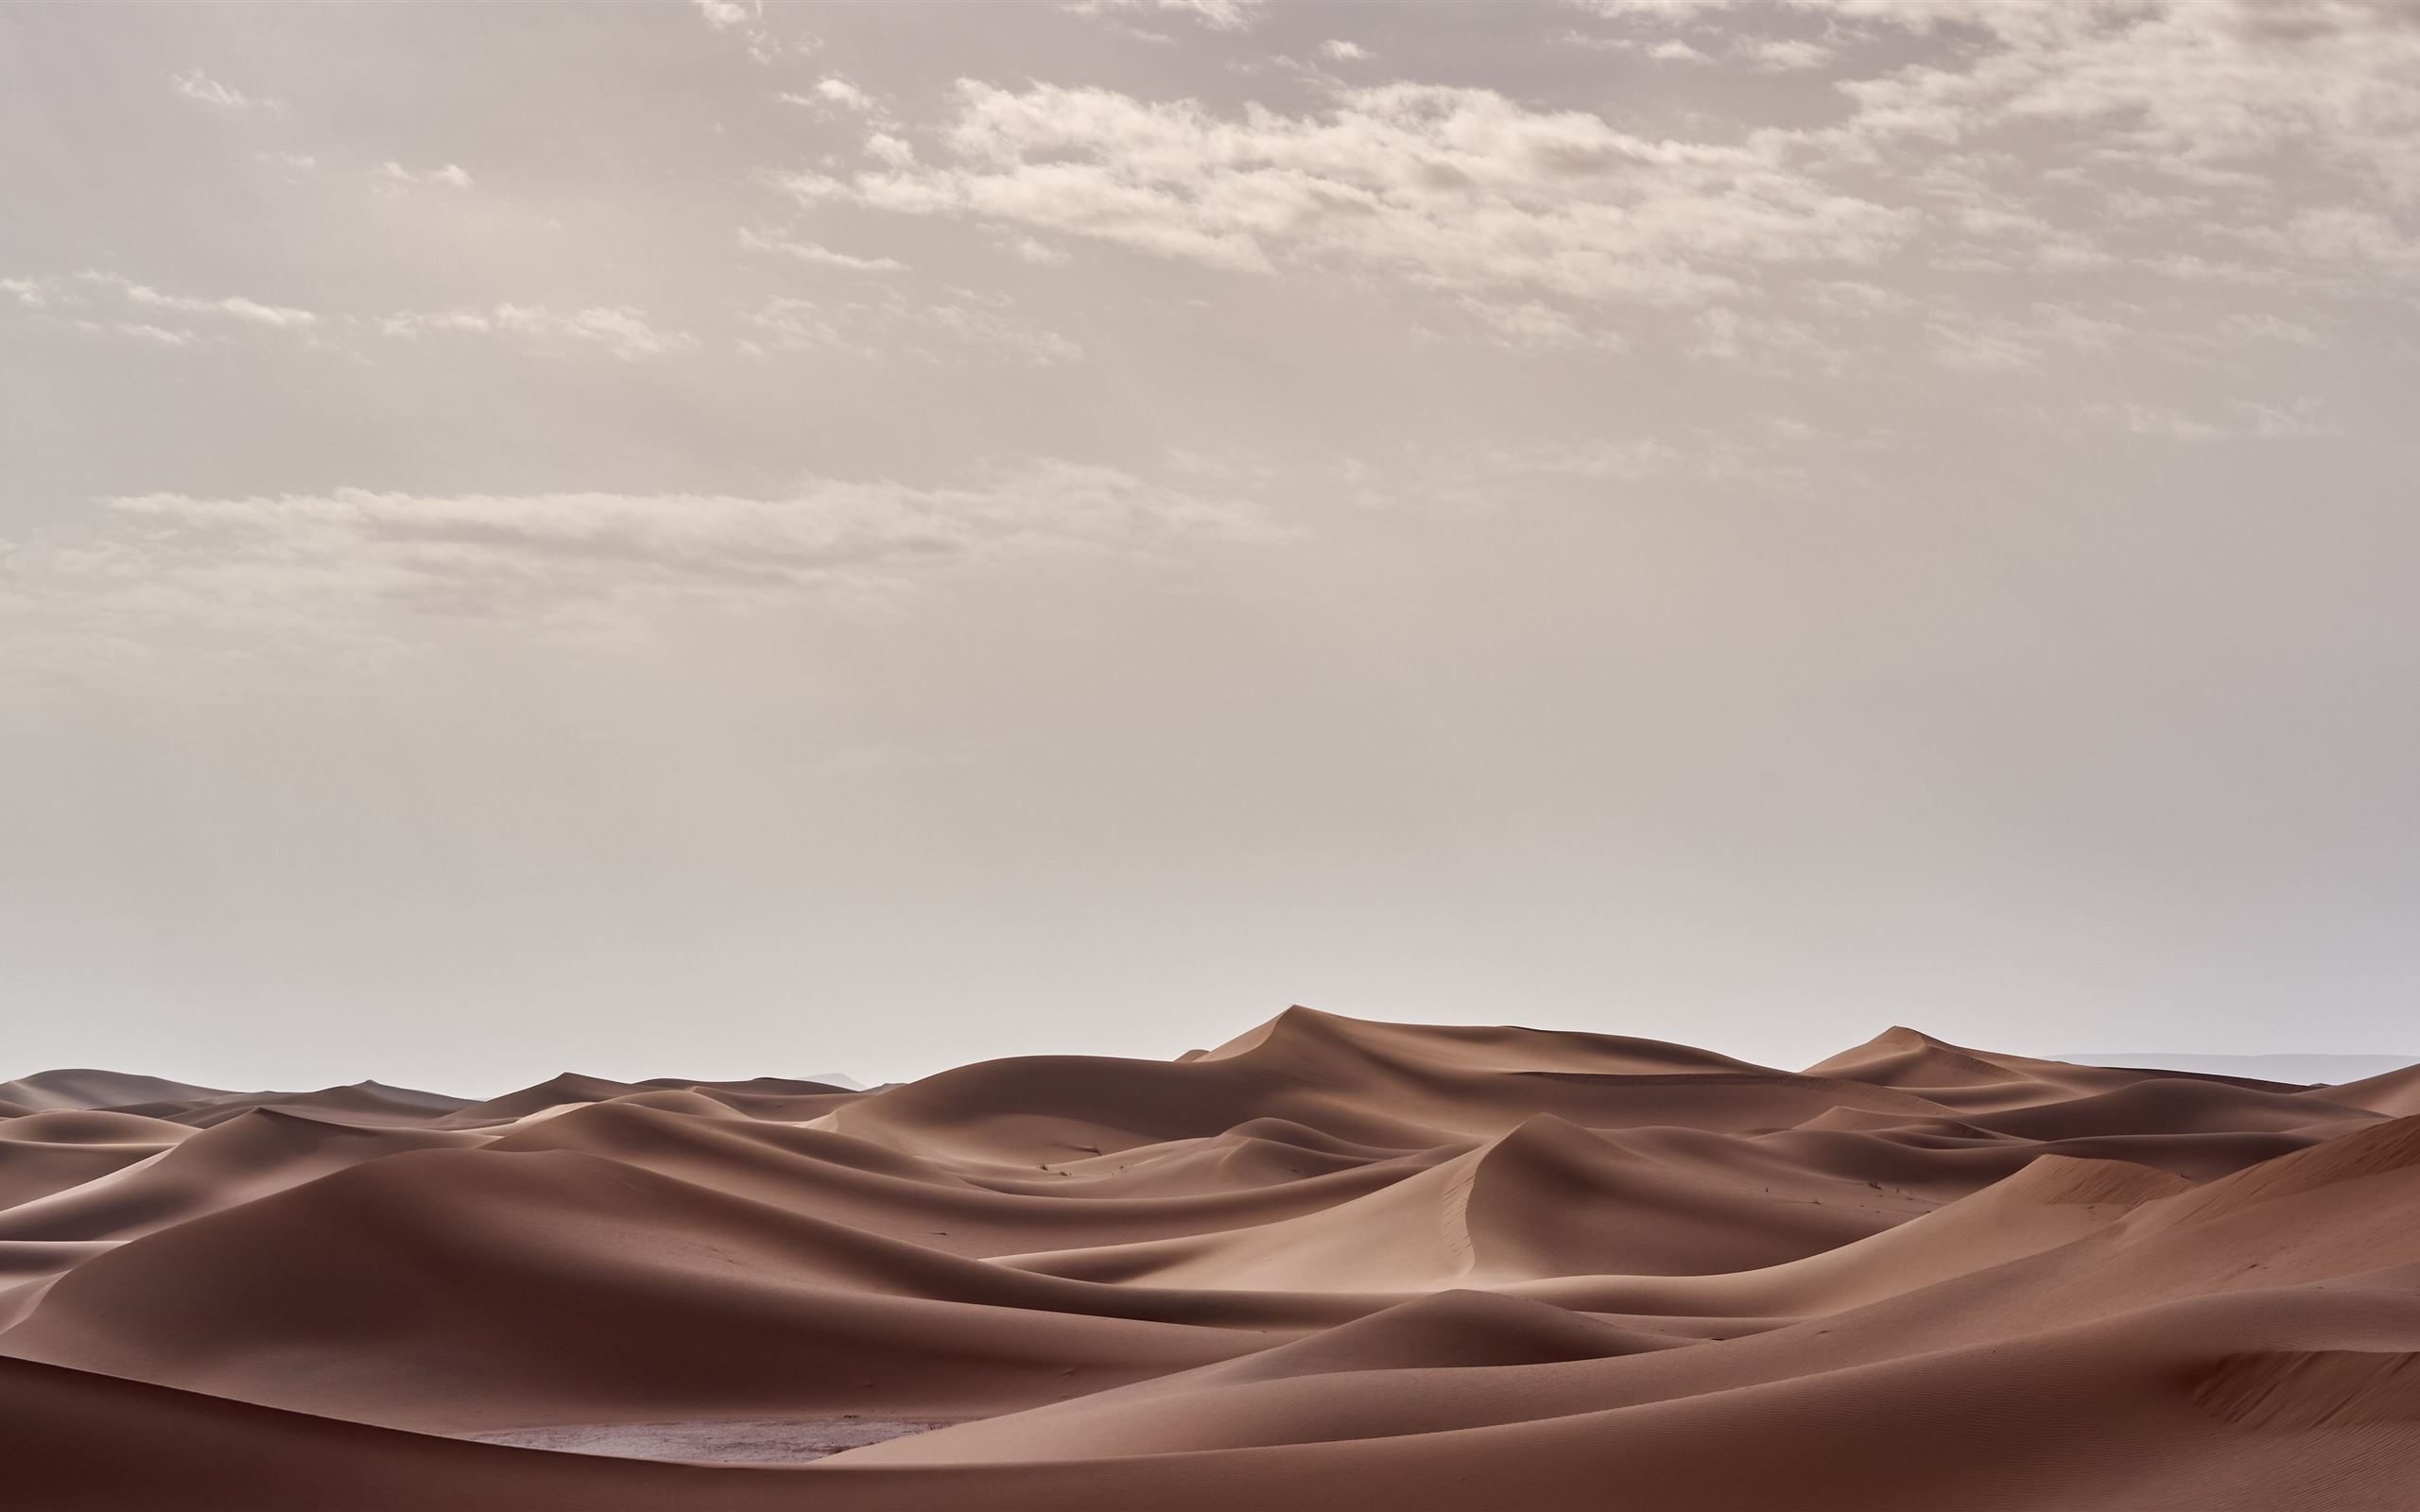 Nếu bạn yêu thích sự kỳ vĩ và hùng vĩ của sa mạc, thì chắc chắn không thể bỏ qua bức ảnh liên quan đến \